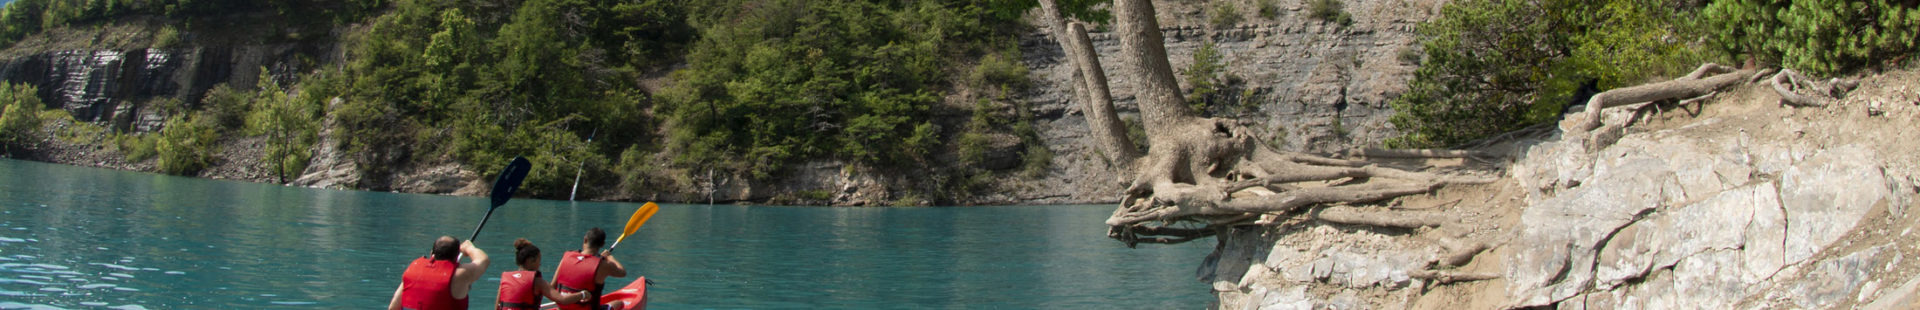 Le canoë pour explorer le lac de Serre-Ponçon